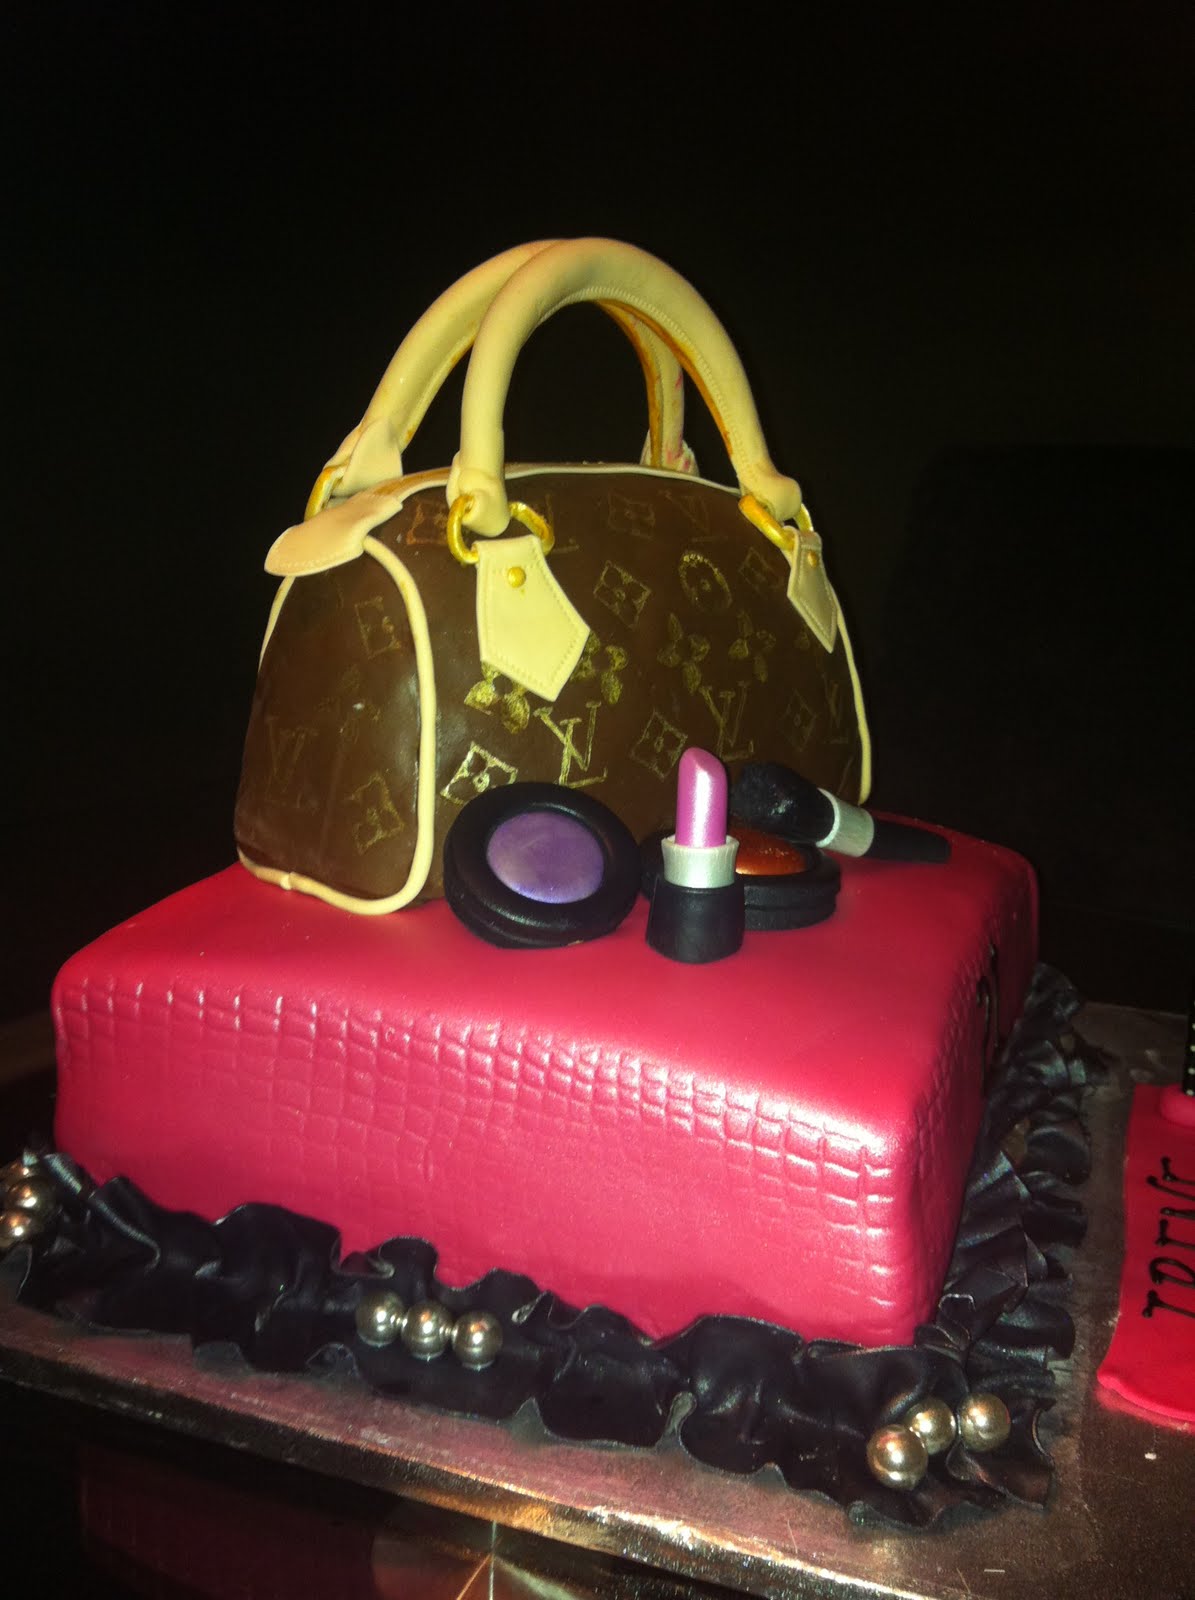 21st Louis Vuitton Bag Cake  Louis vuitton cake, Bag cake, Cake